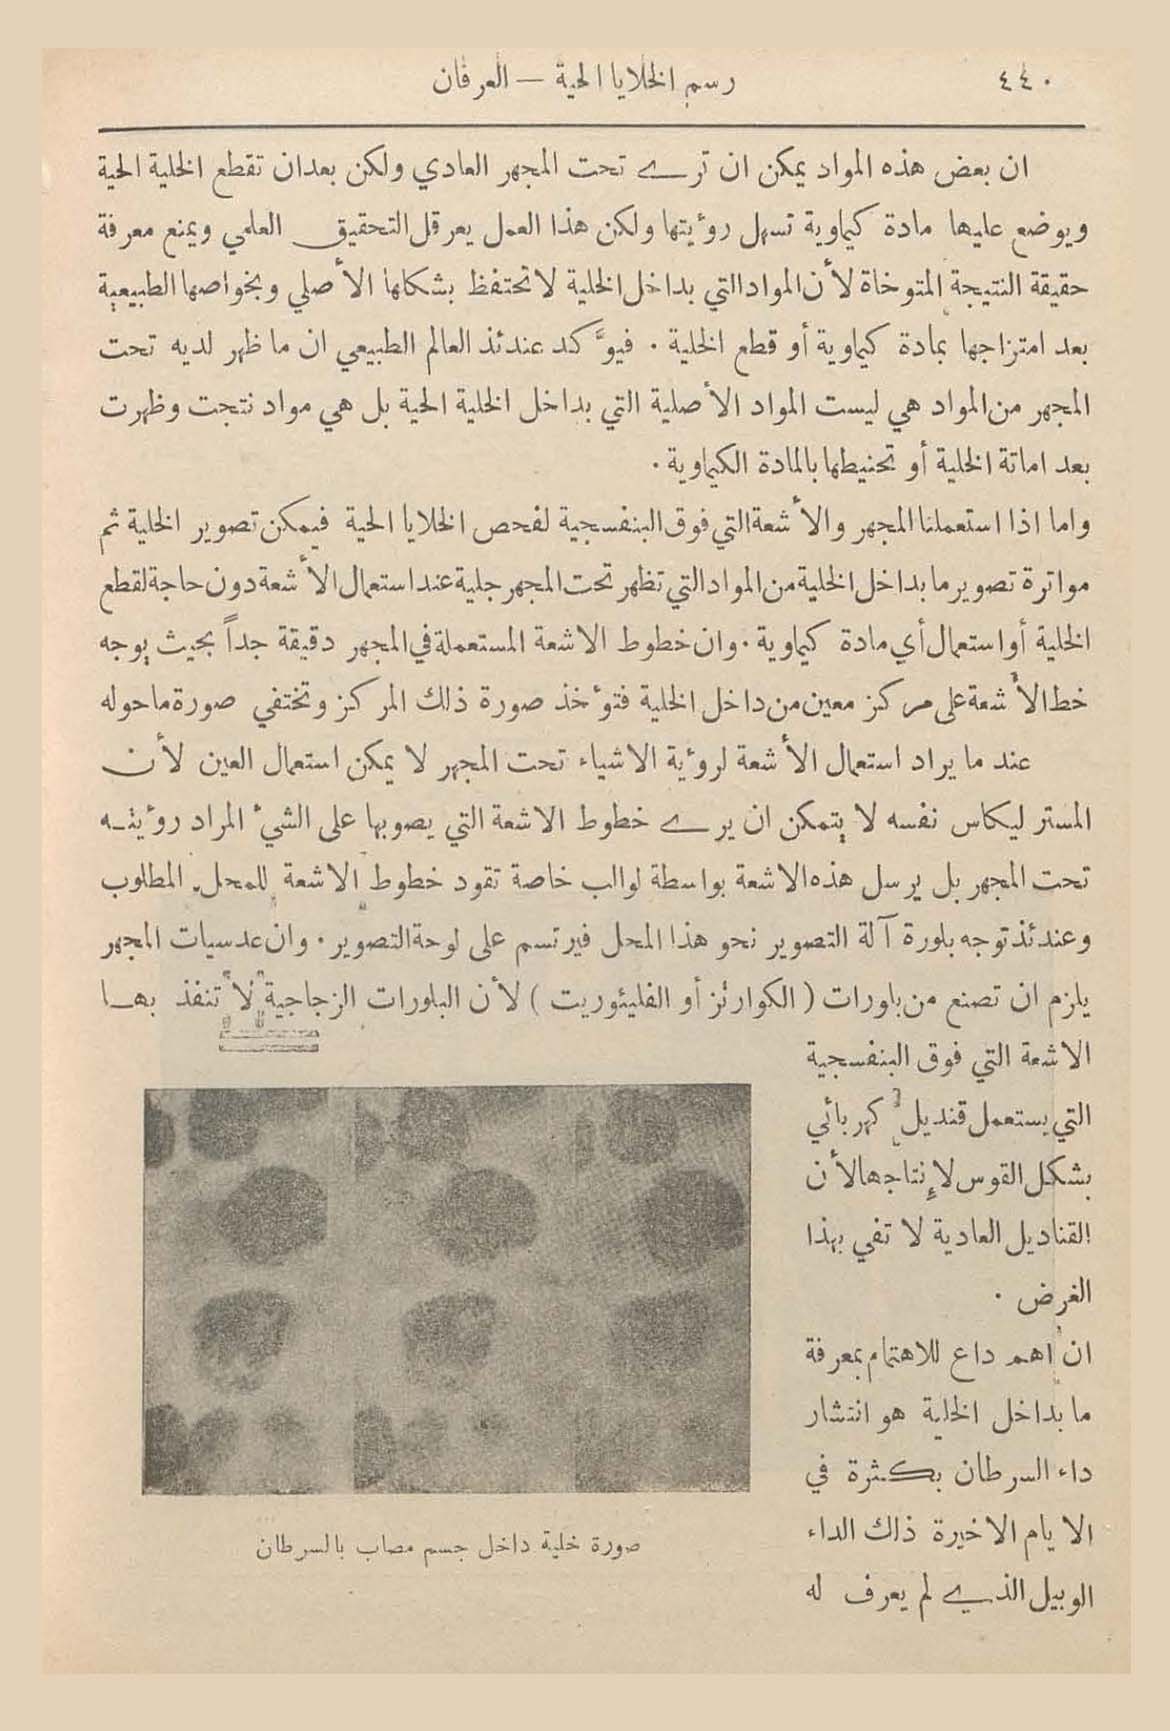 الأرشيف: العرفان العدد 4 تاريخ الإصدار 01 نوفمبر 1930 مقالة رسم 